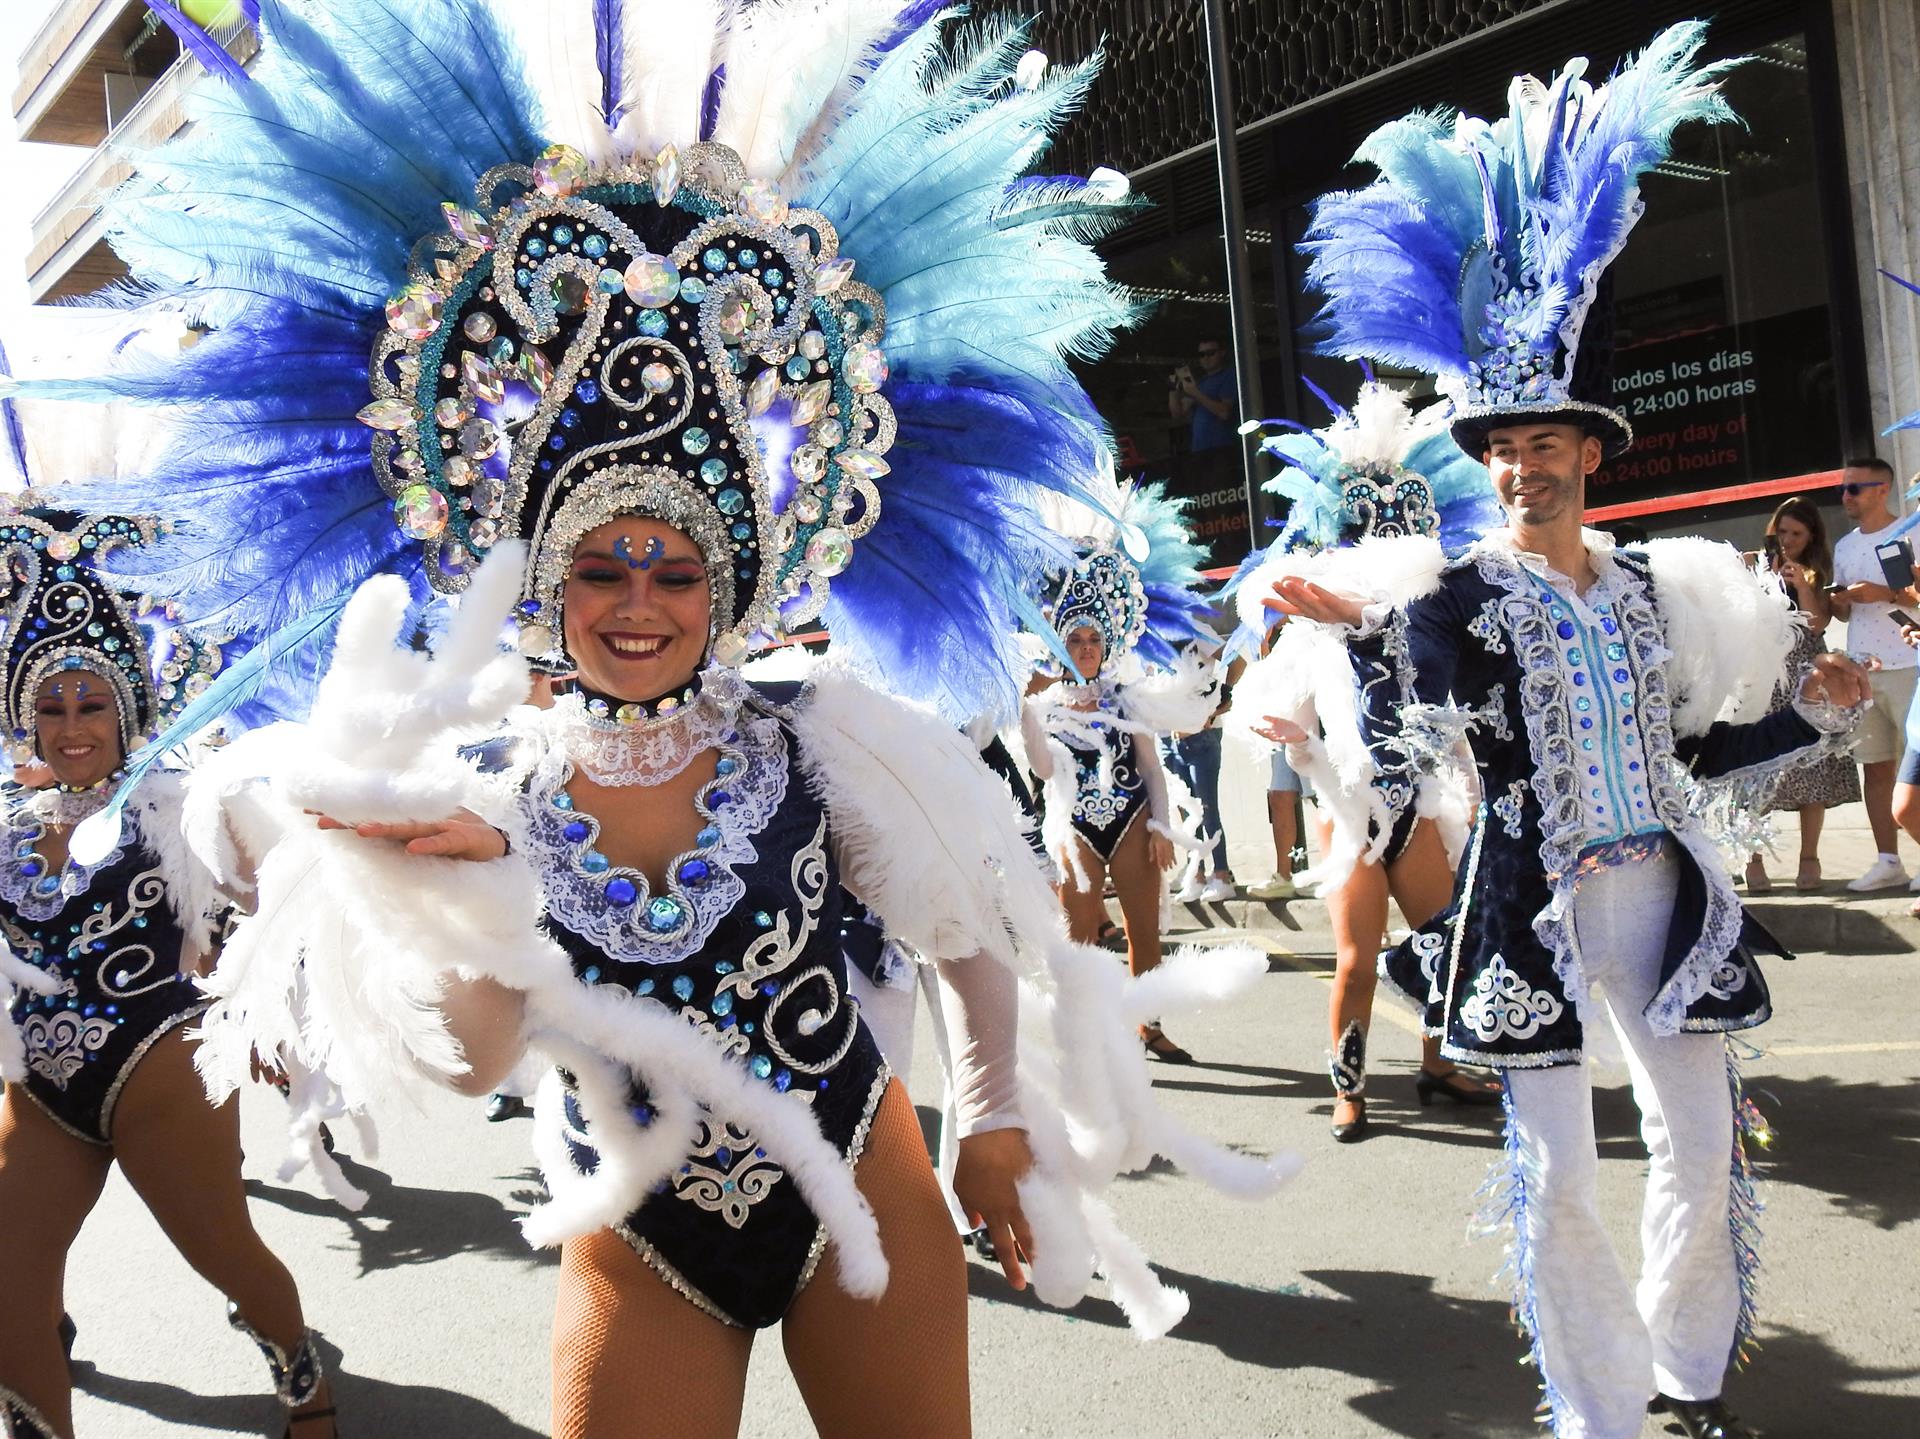 El municipio de Puerto de la Cruz ha celebrado hoy su coso con el que se pone fin a los actos de la séptima edición de su carnaval de verano. En el desfile han participado diversas agrupaciones como comparsas, batucadas o murgas. EFE/Nerea de Ara